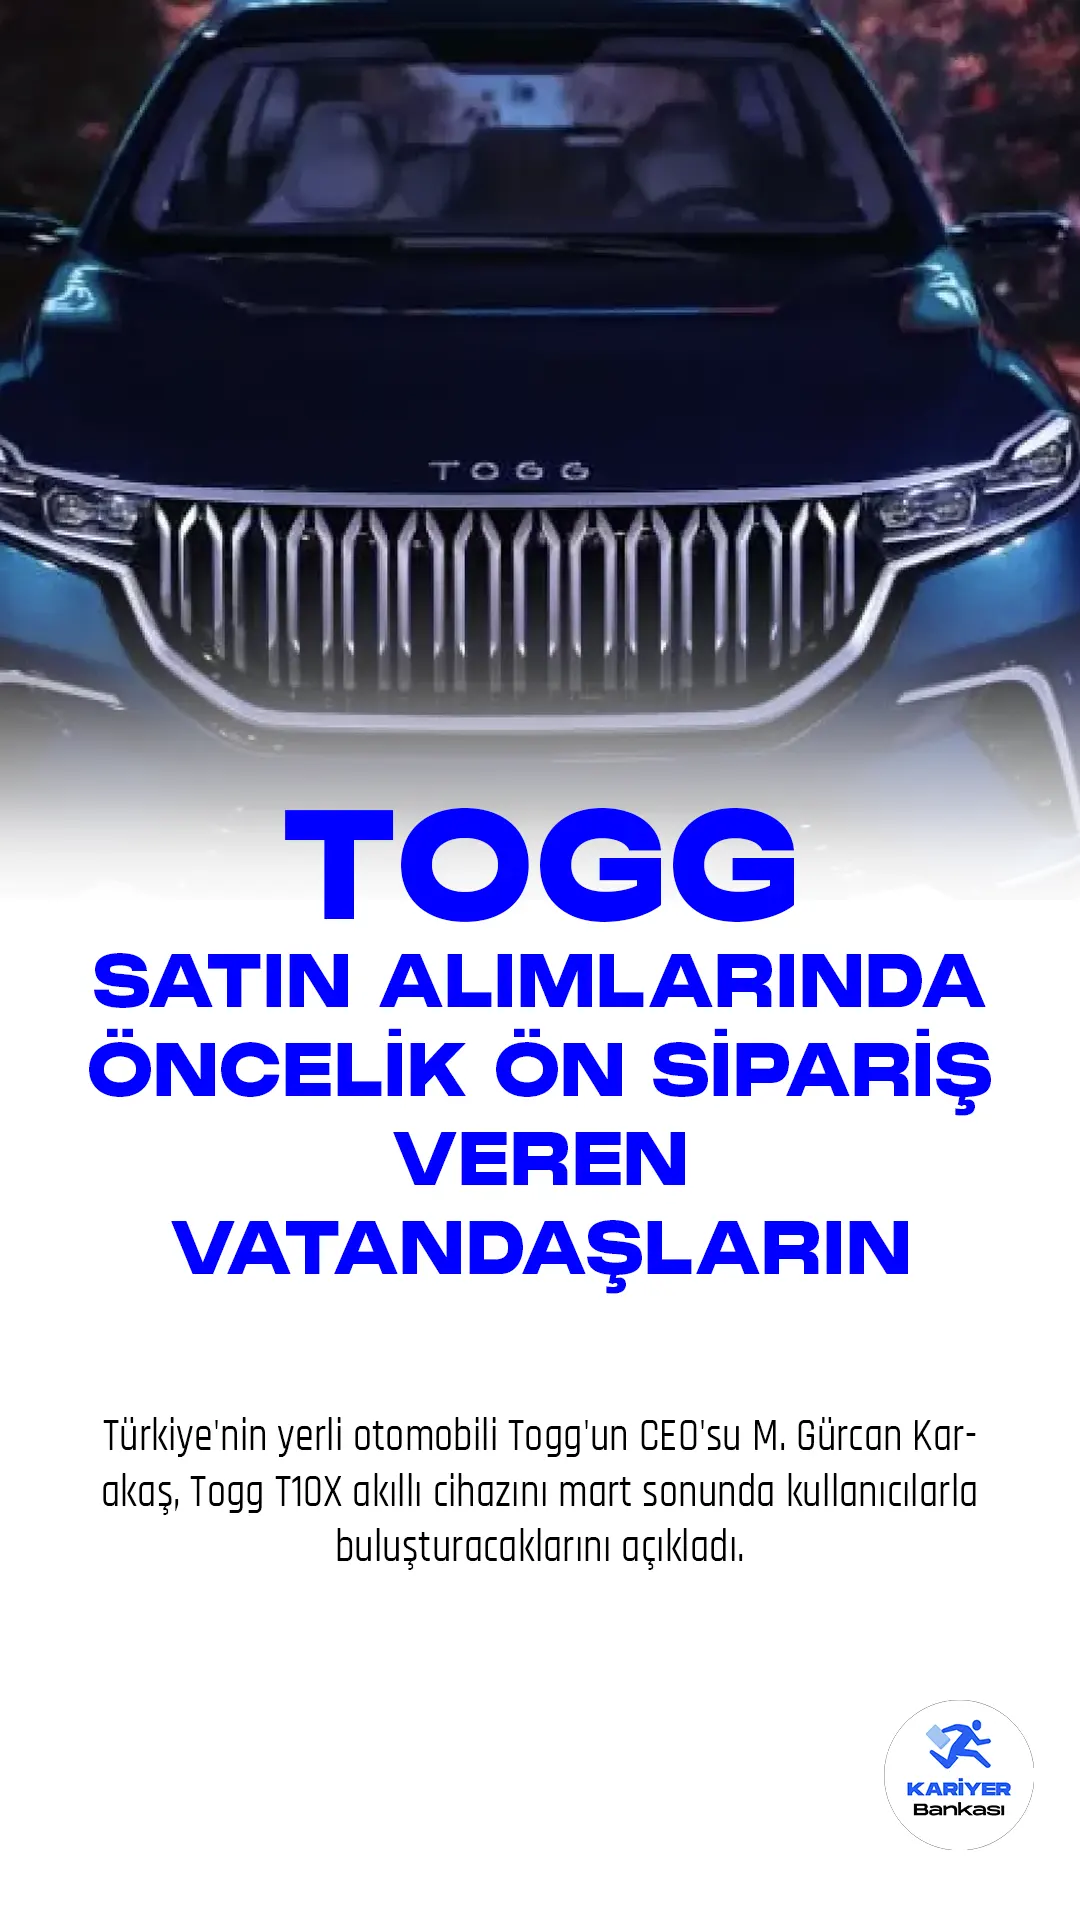 Türkiye'nin yerli otomobili Togg'un CEO'su M. Gürcan Karakaş, Togg T10X akıllı cihazını mart sonunda kullanıcılarla buluşturacaklarını açıkladı.